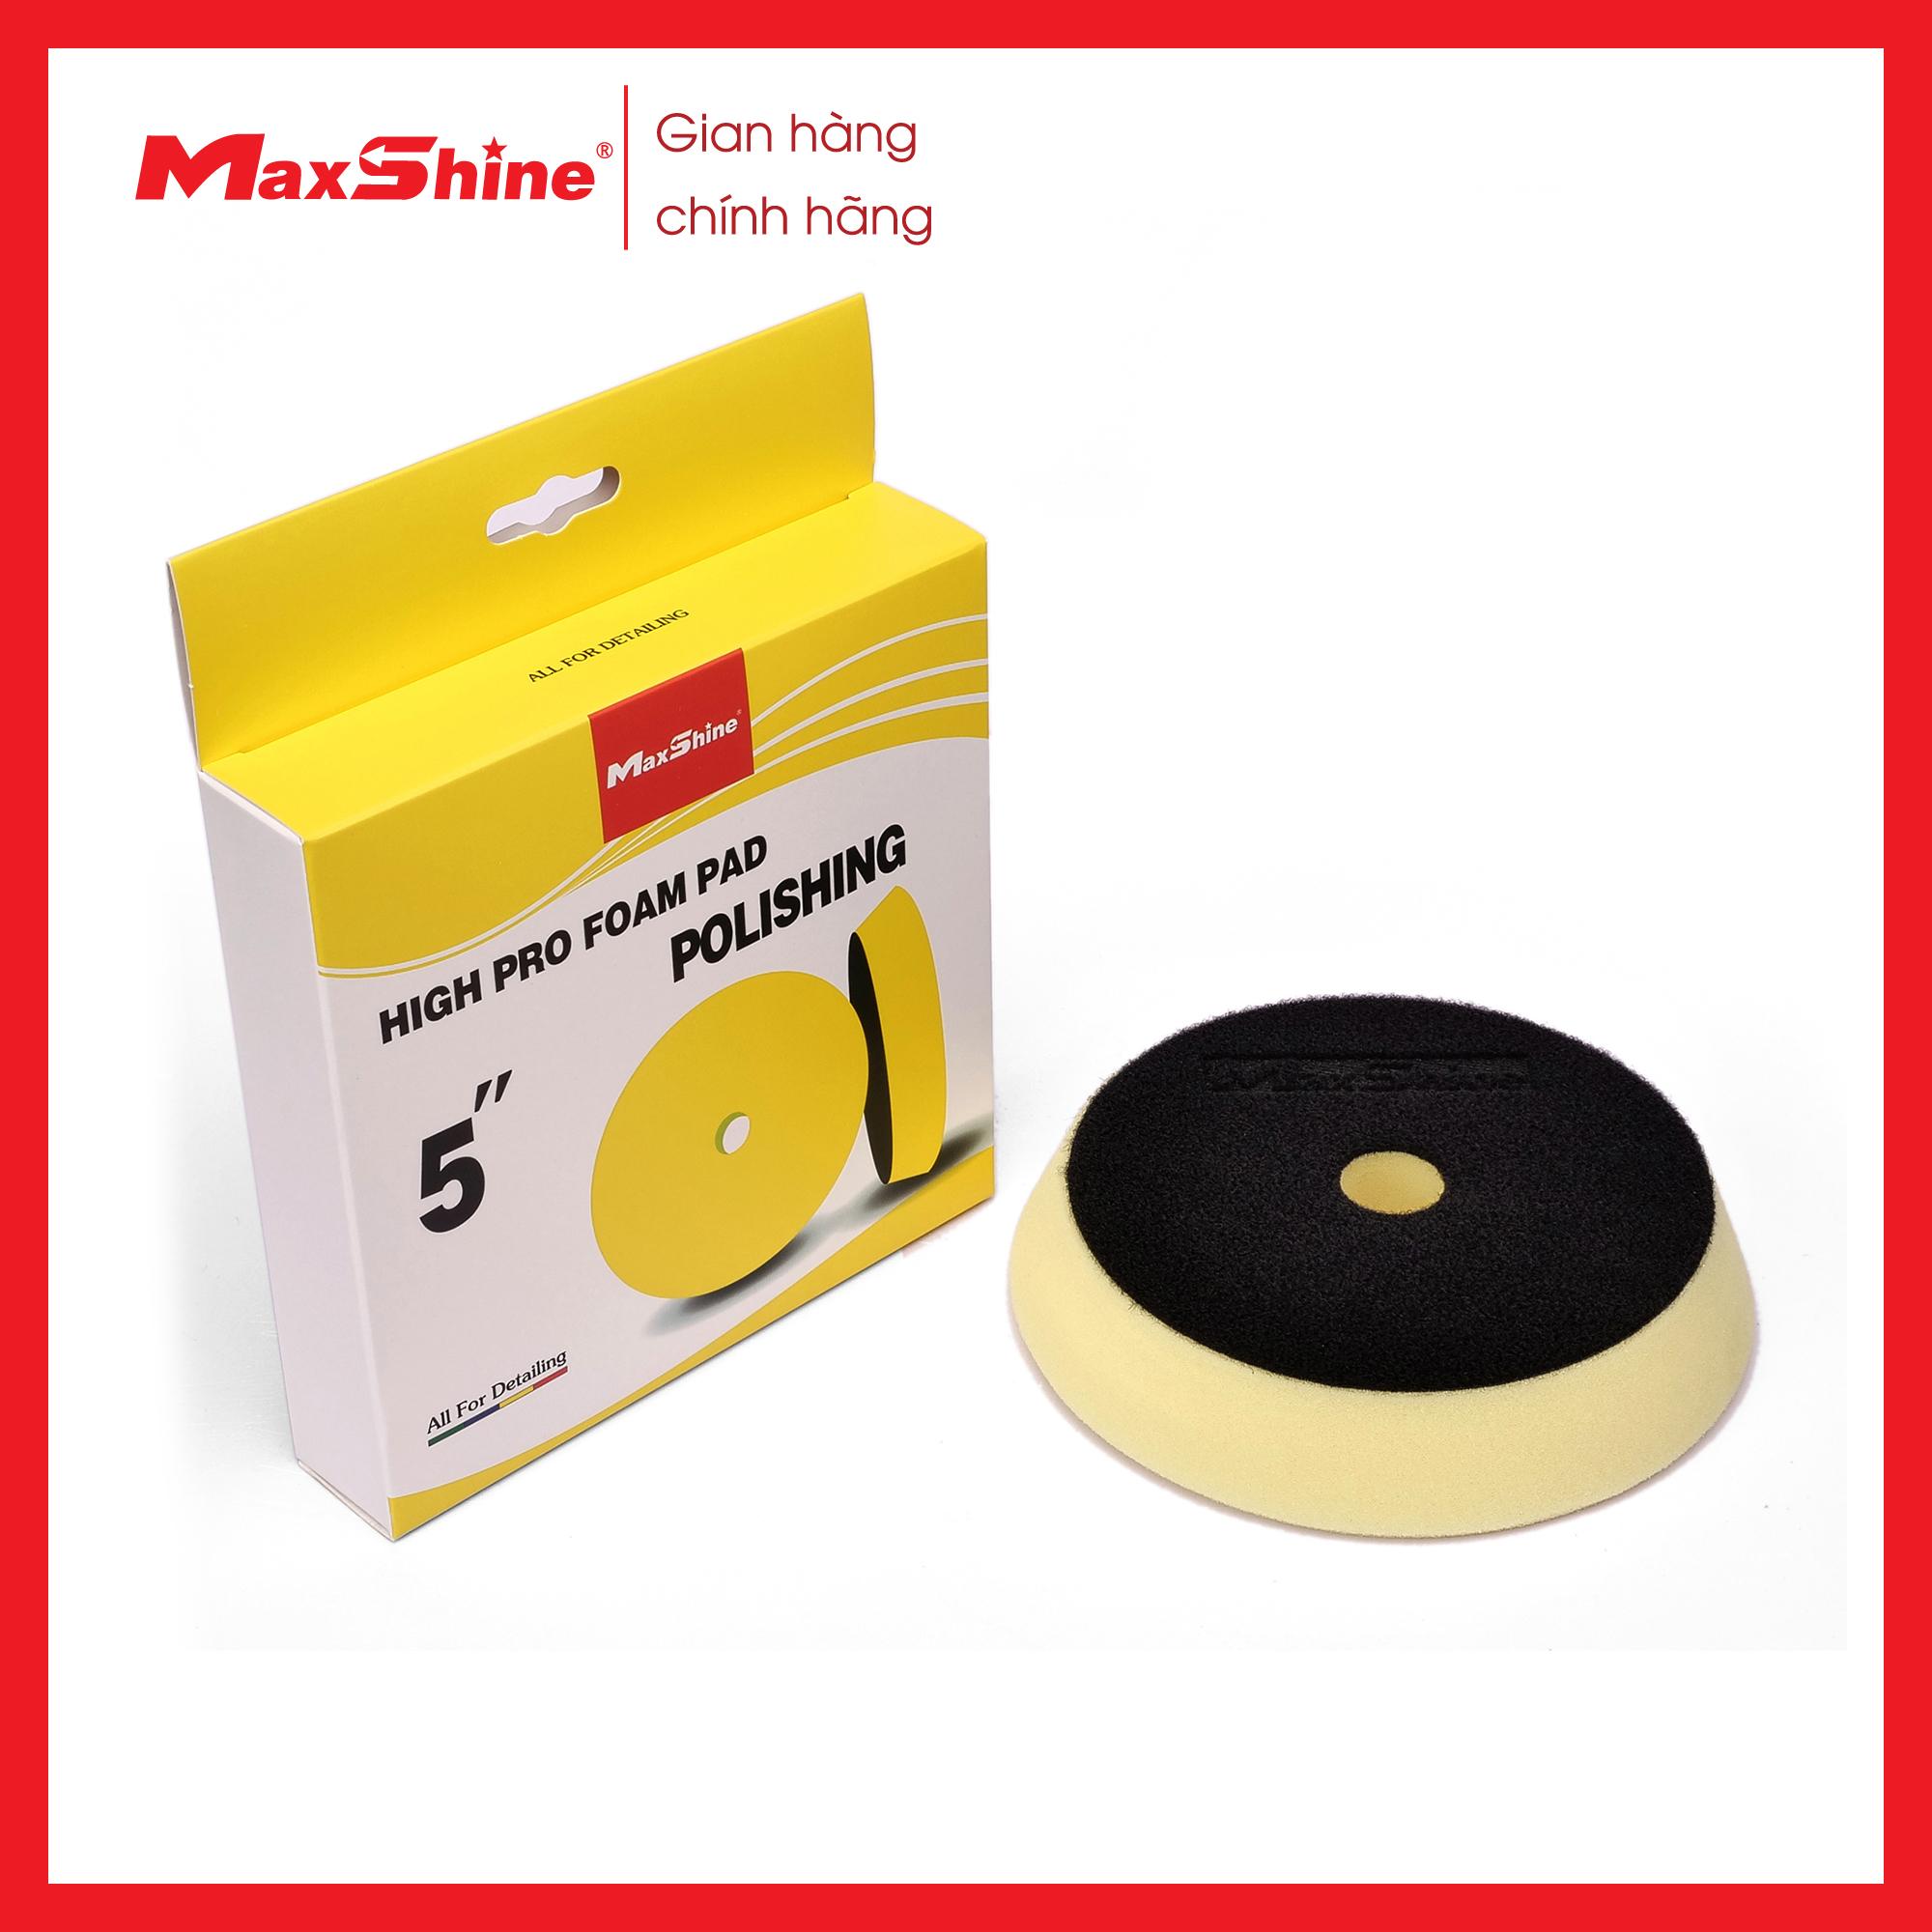 Phớt xốp/mút đánh bóng bước 2 màu vàng 5.2 inch Maxshine 2022155Y được làm từ xốp màu vàng, có khả năng chống rách cao và chống ăn mòn bởi hóa chất